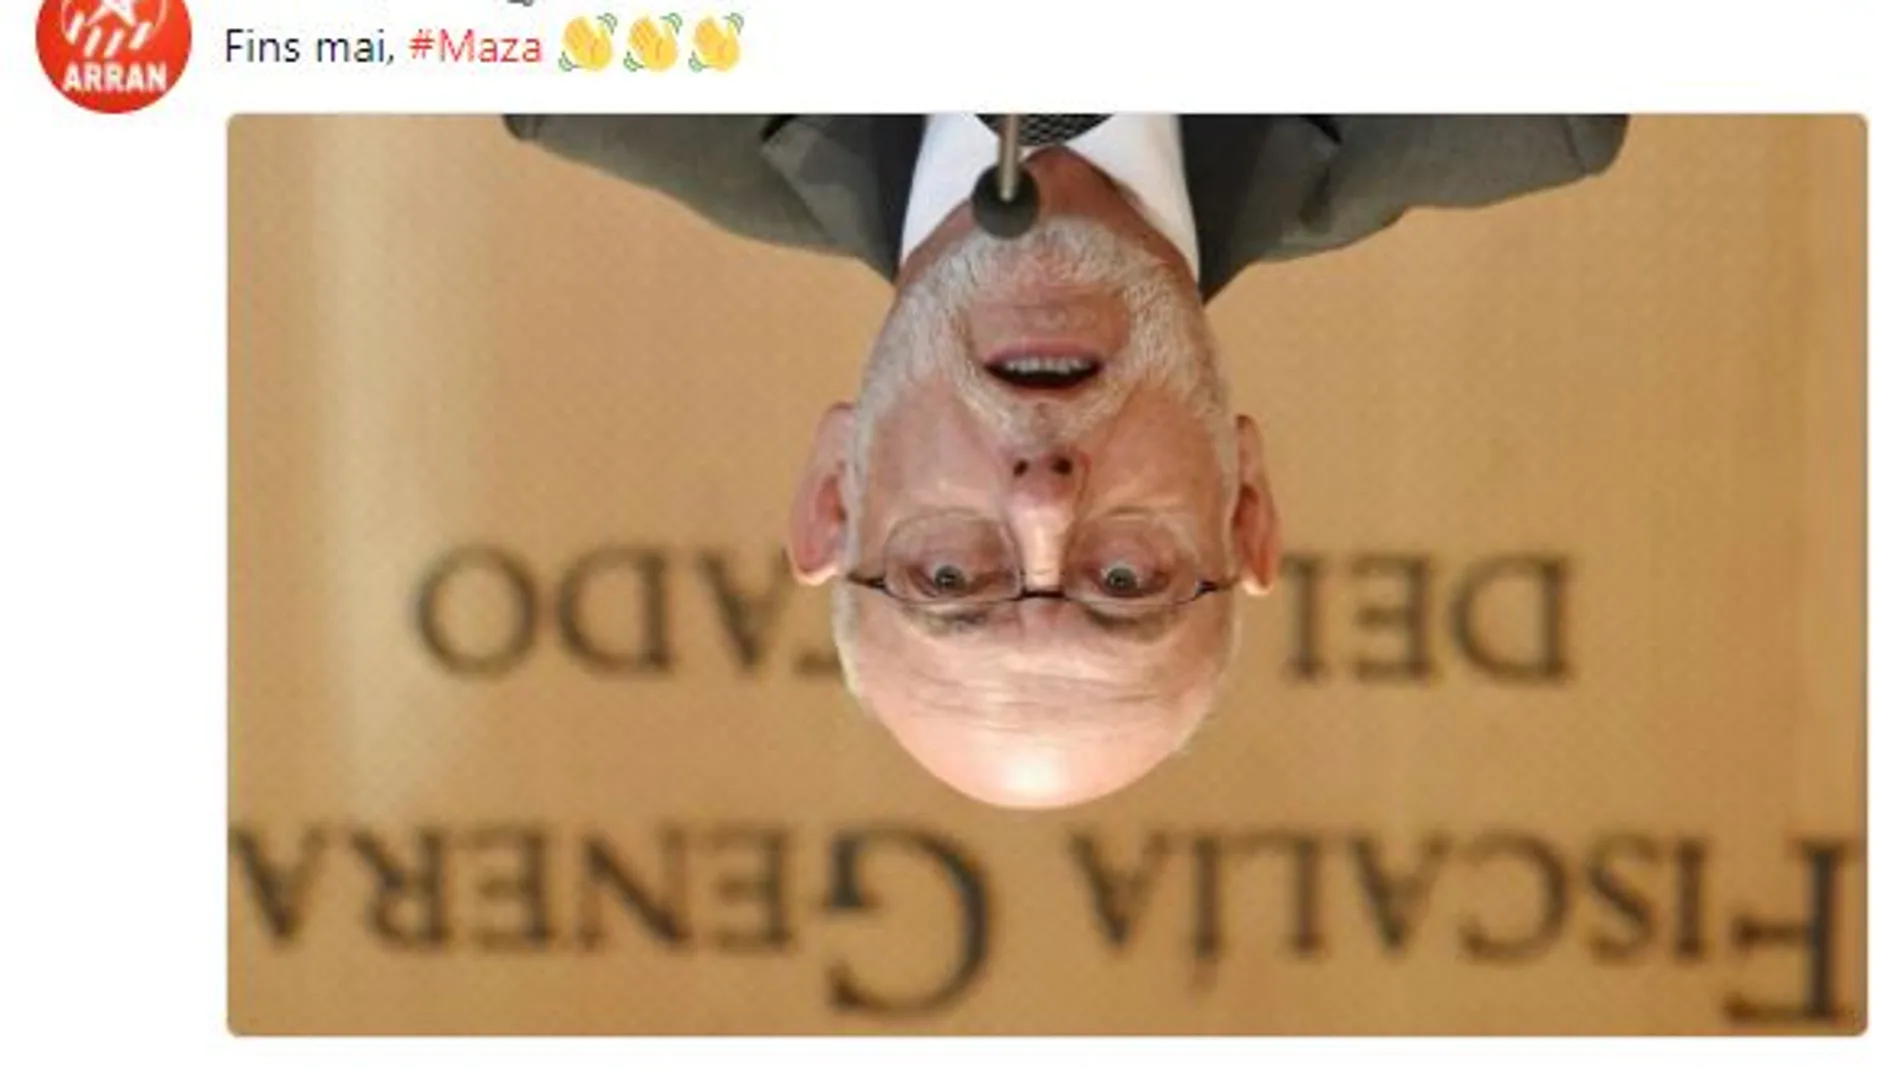 El indignante tuit de los independentistas de Arran: «Hasta nunca, Maza»